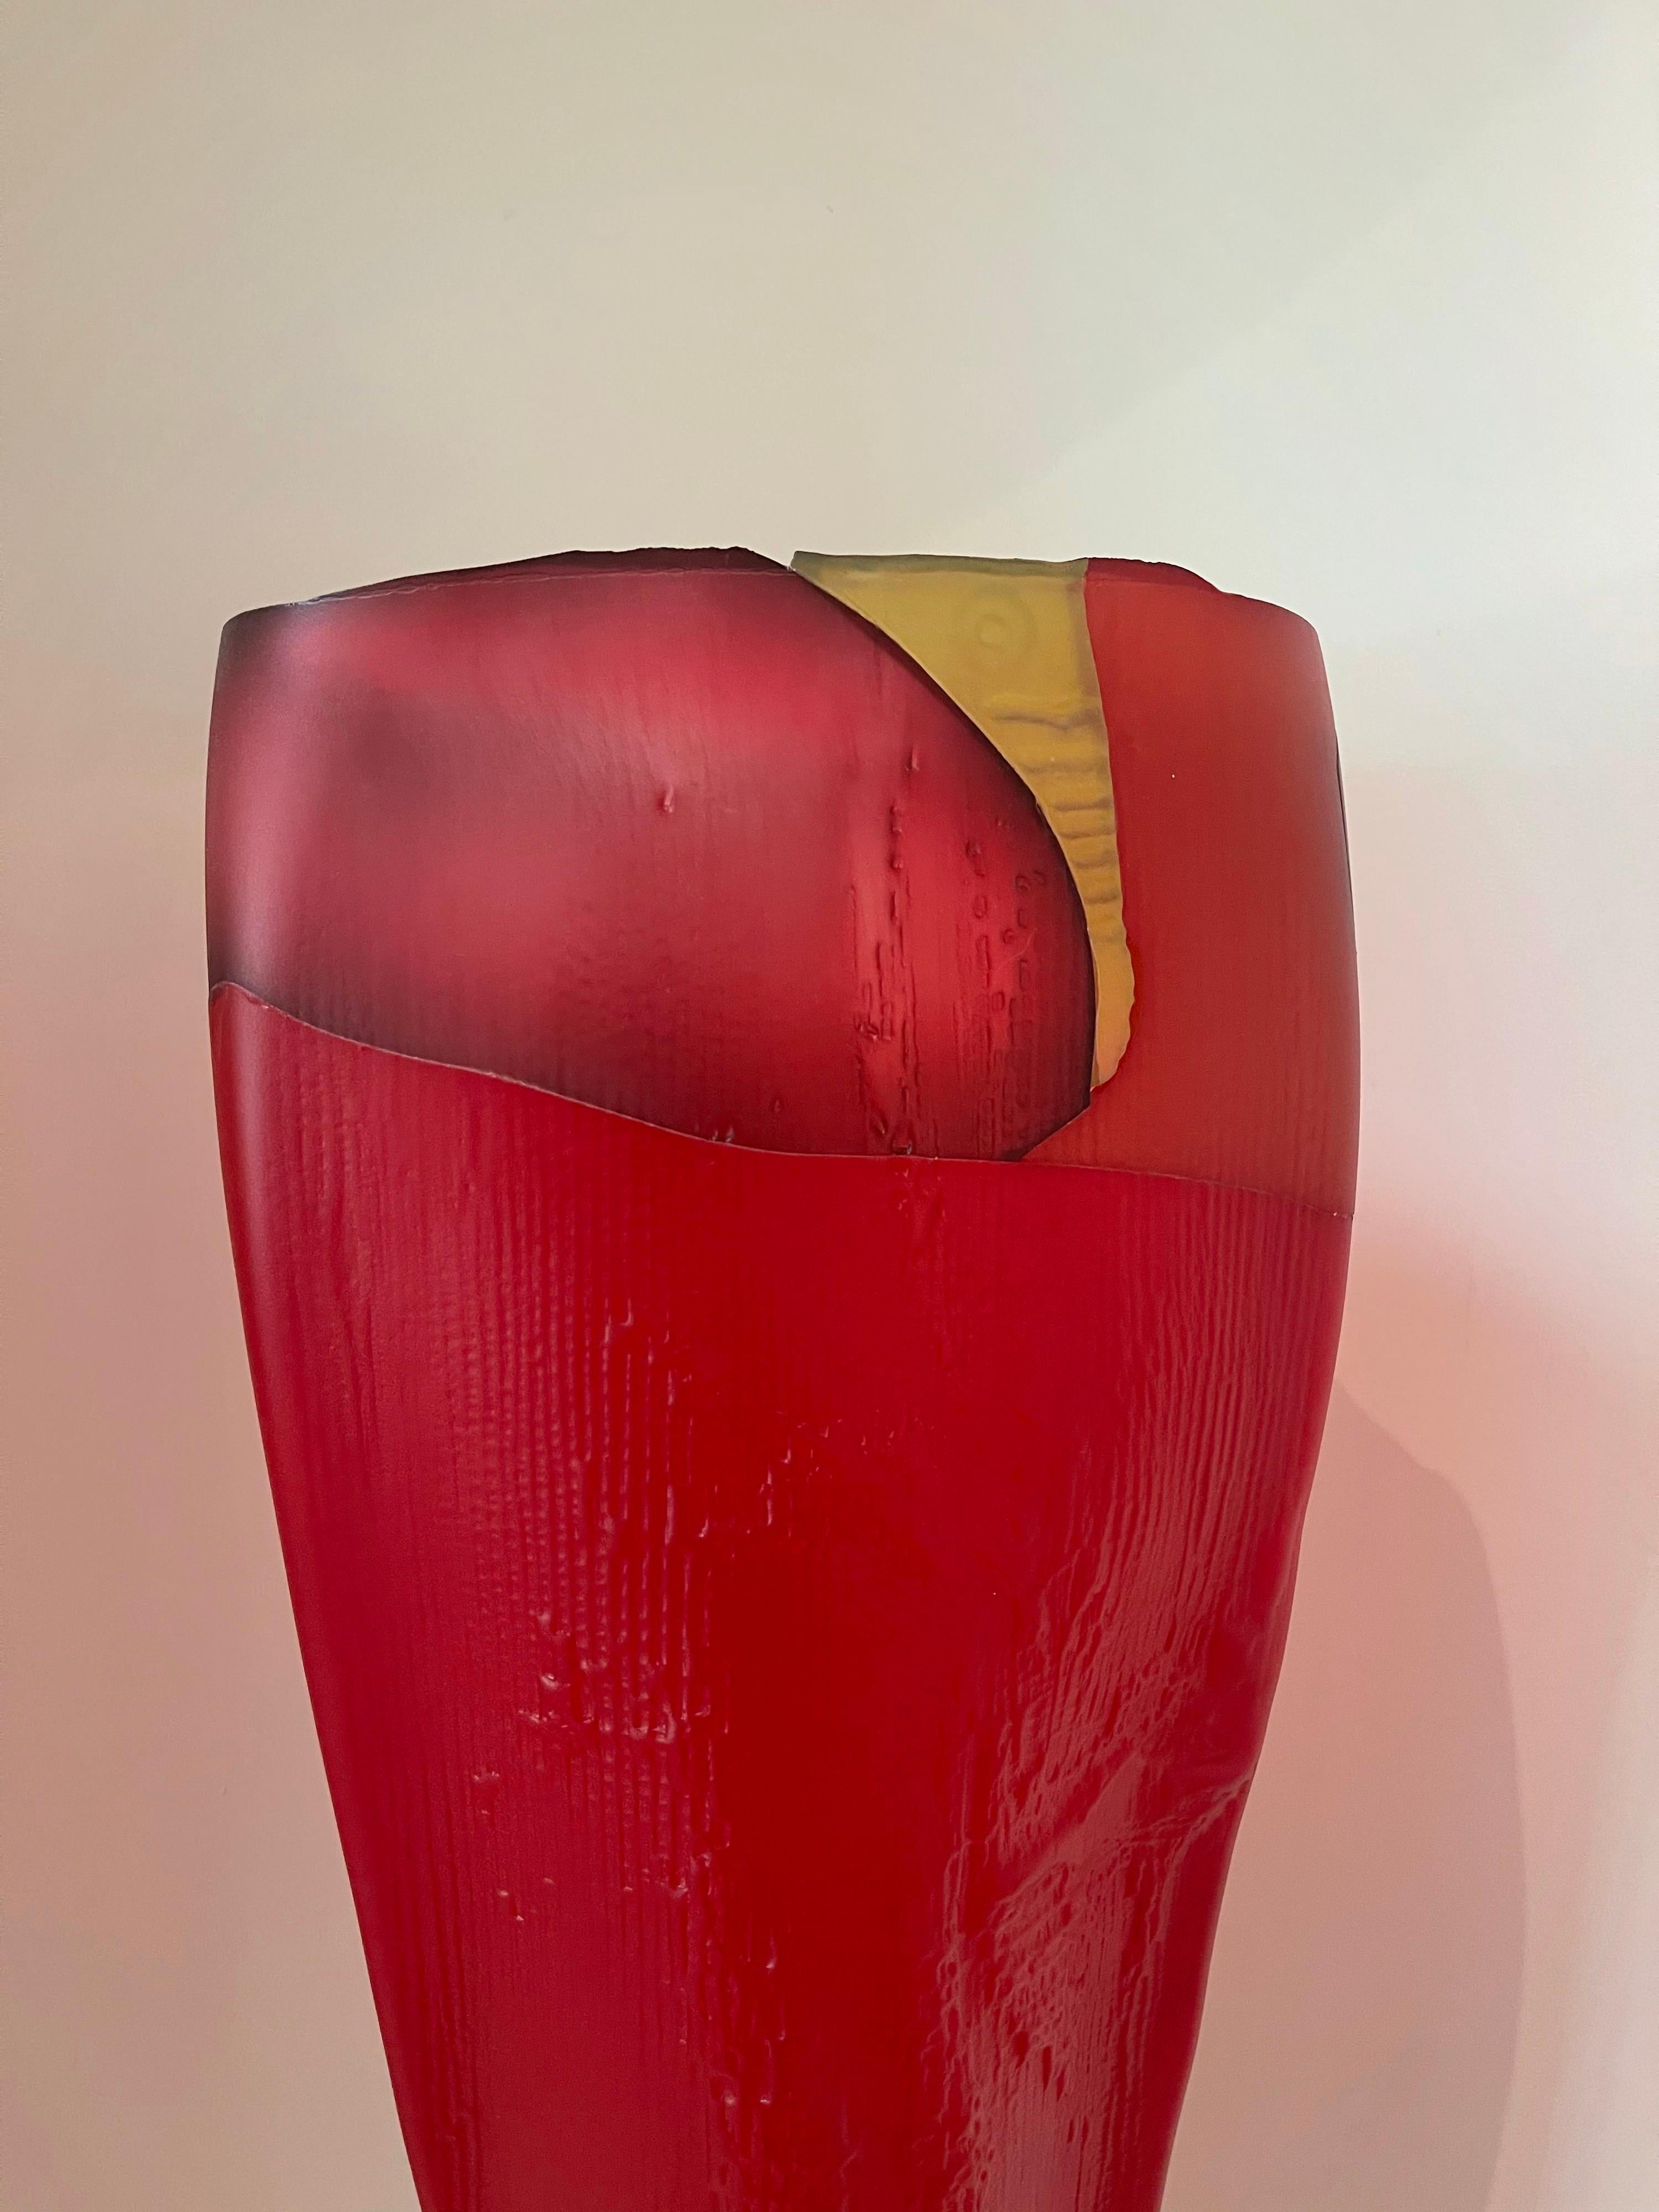 Large Art Glass Vase / Sculpture Entitled 